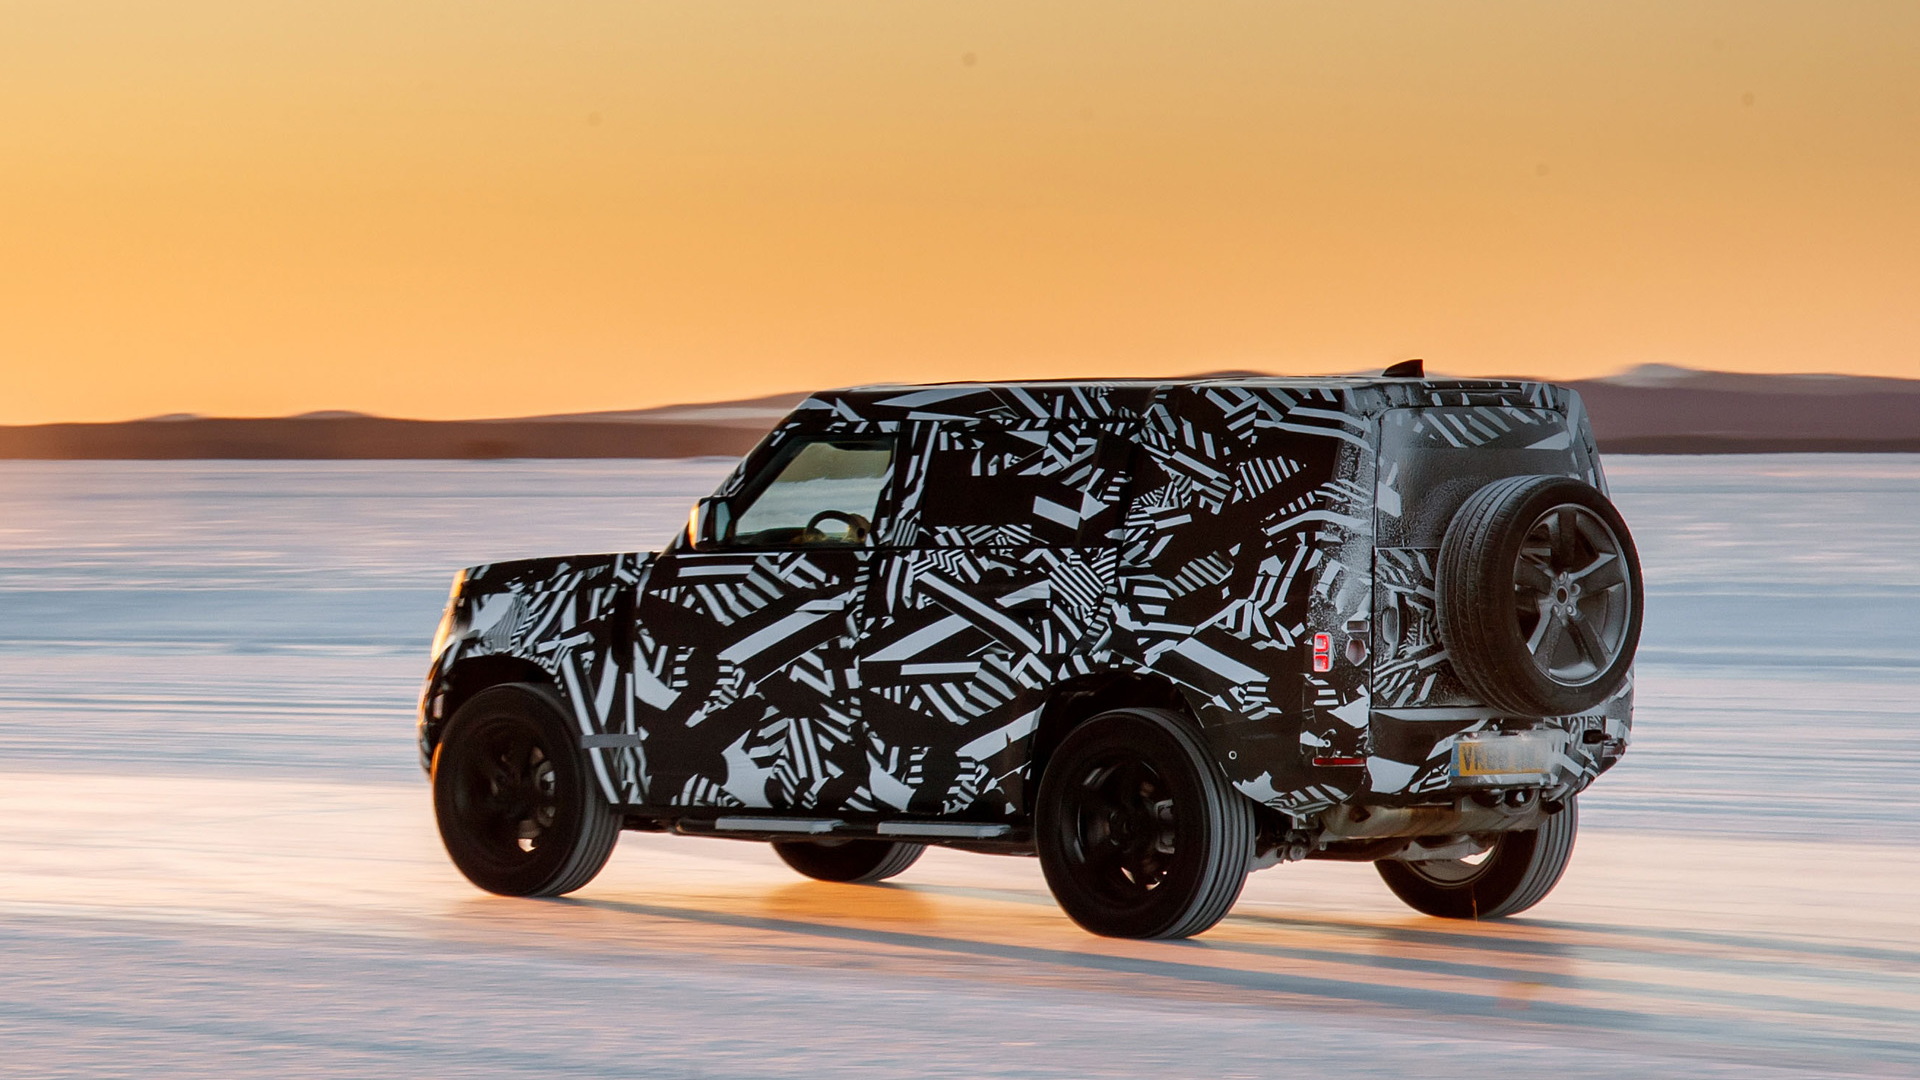 Teaser for new Land Rover Defender debuting in 2019